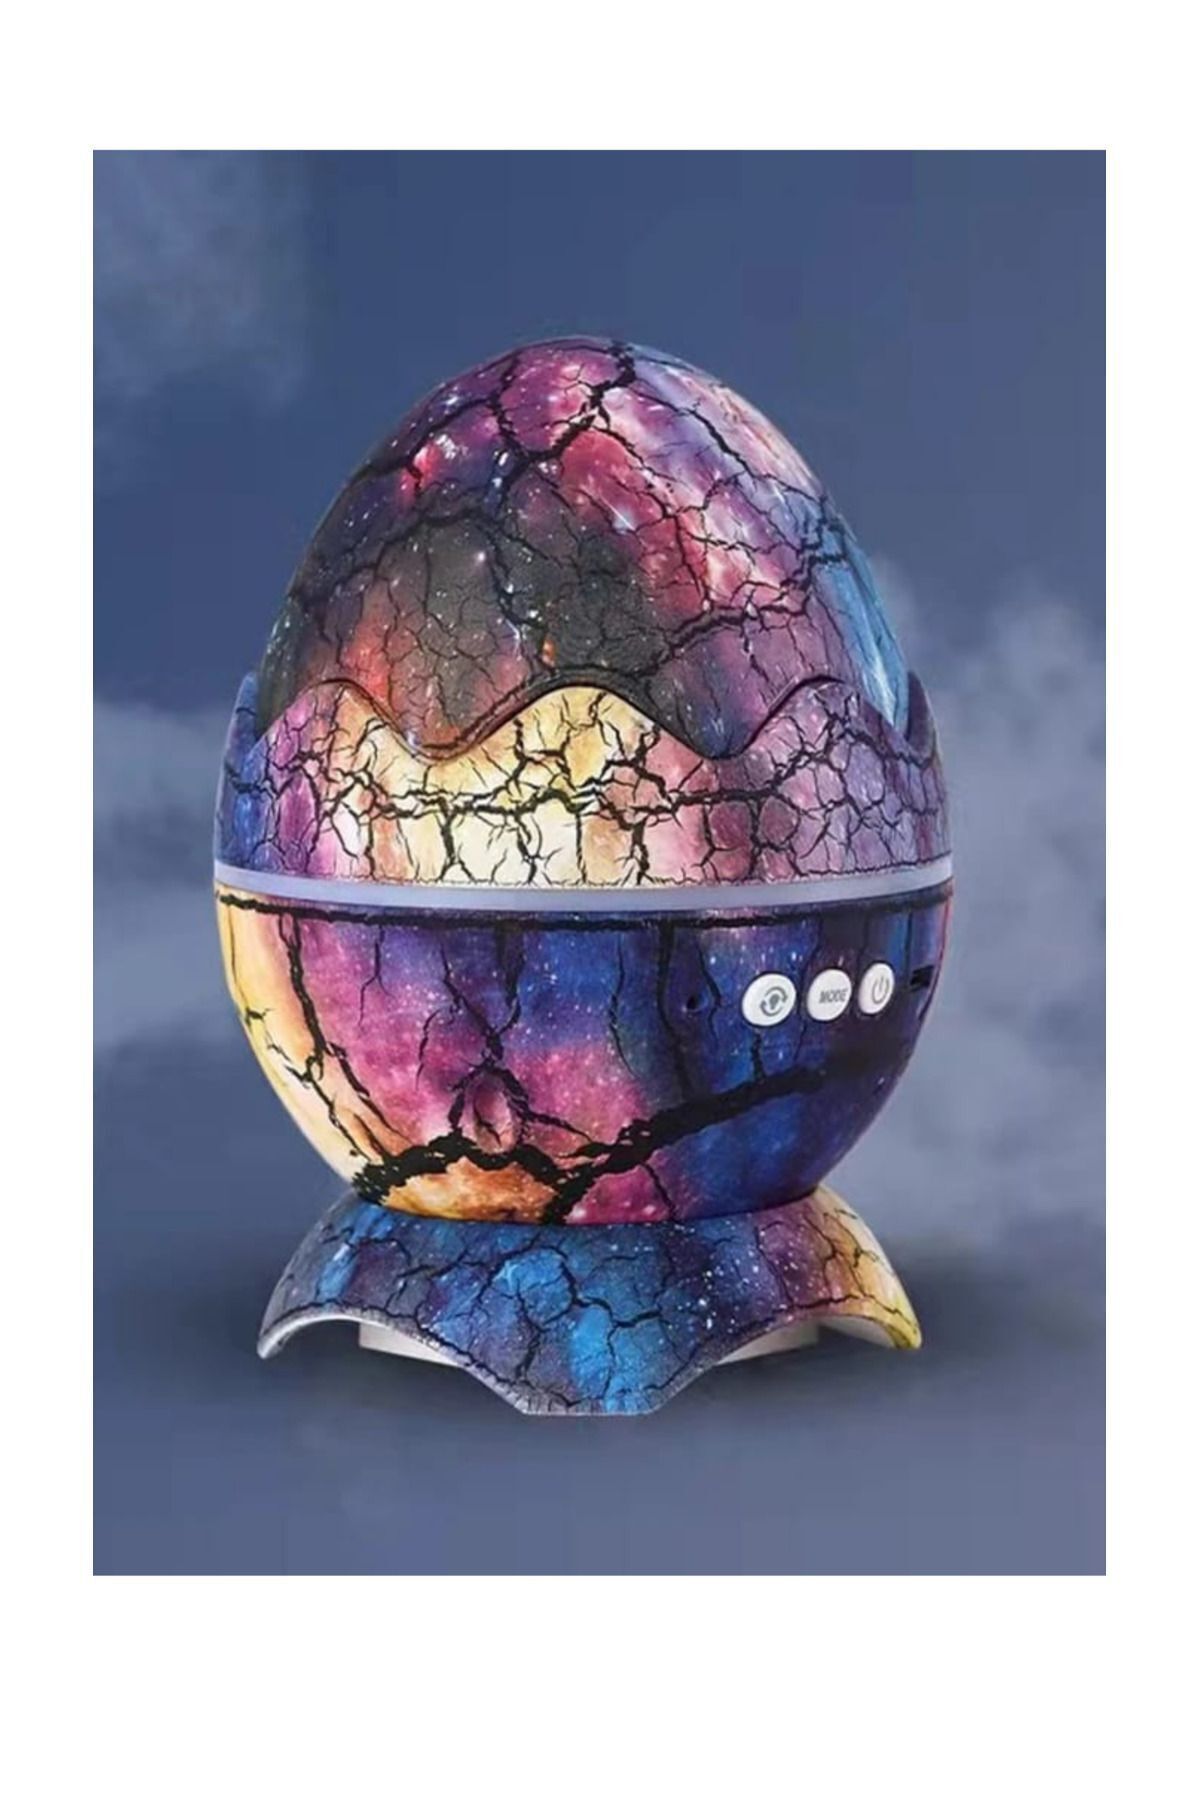 MOJE MORE Dinozor Yumurtası Galaxy Projektör, Gökyüzü Projeksiyon Gece Lambası, USB Girişli Bluetooth Hoparlör